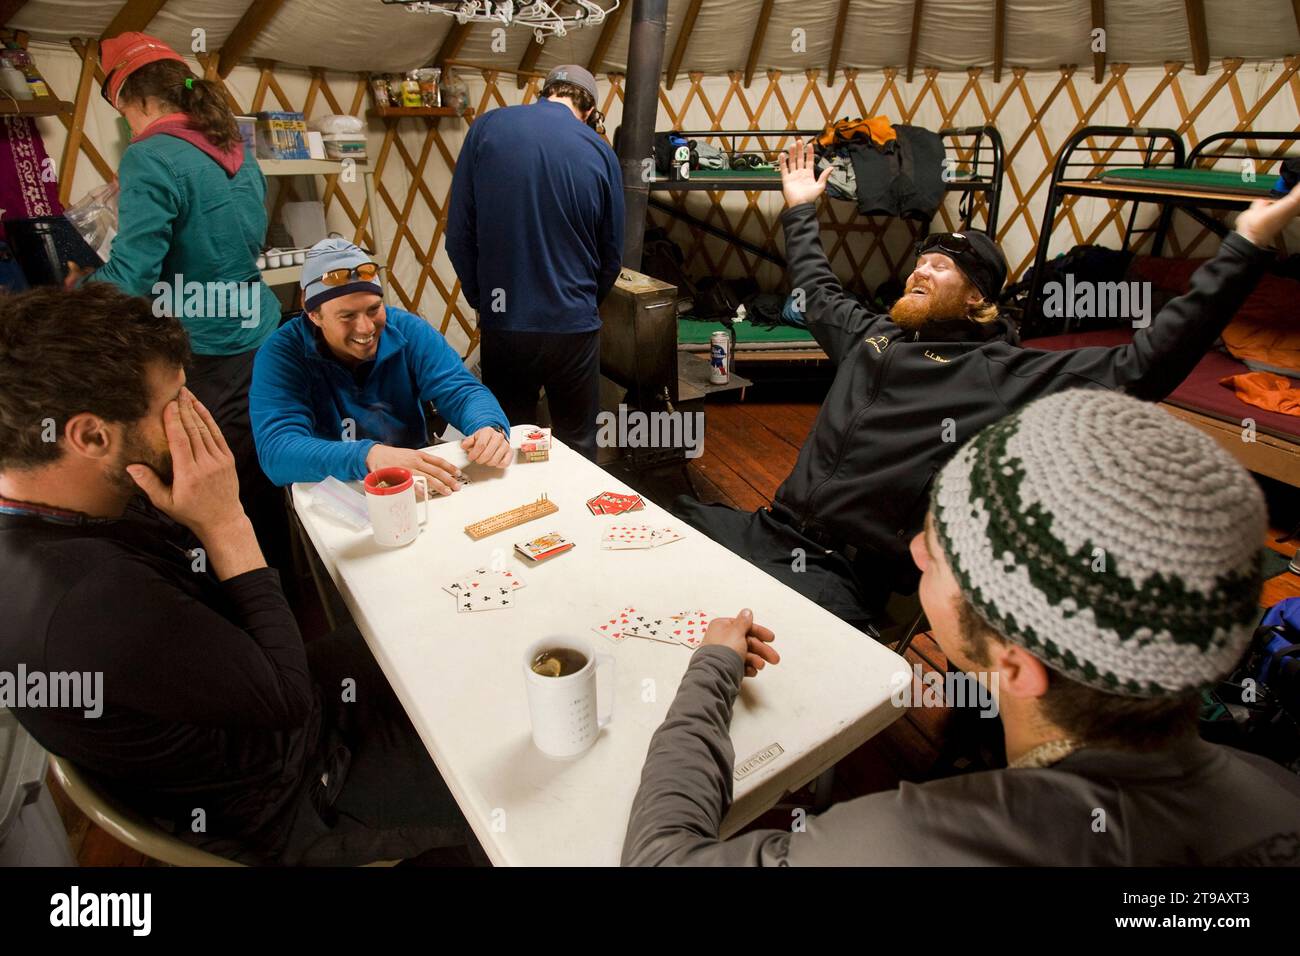 Grupo de amigos riendo y jugando a las cartas en una yurta de invierno. Foto de stock